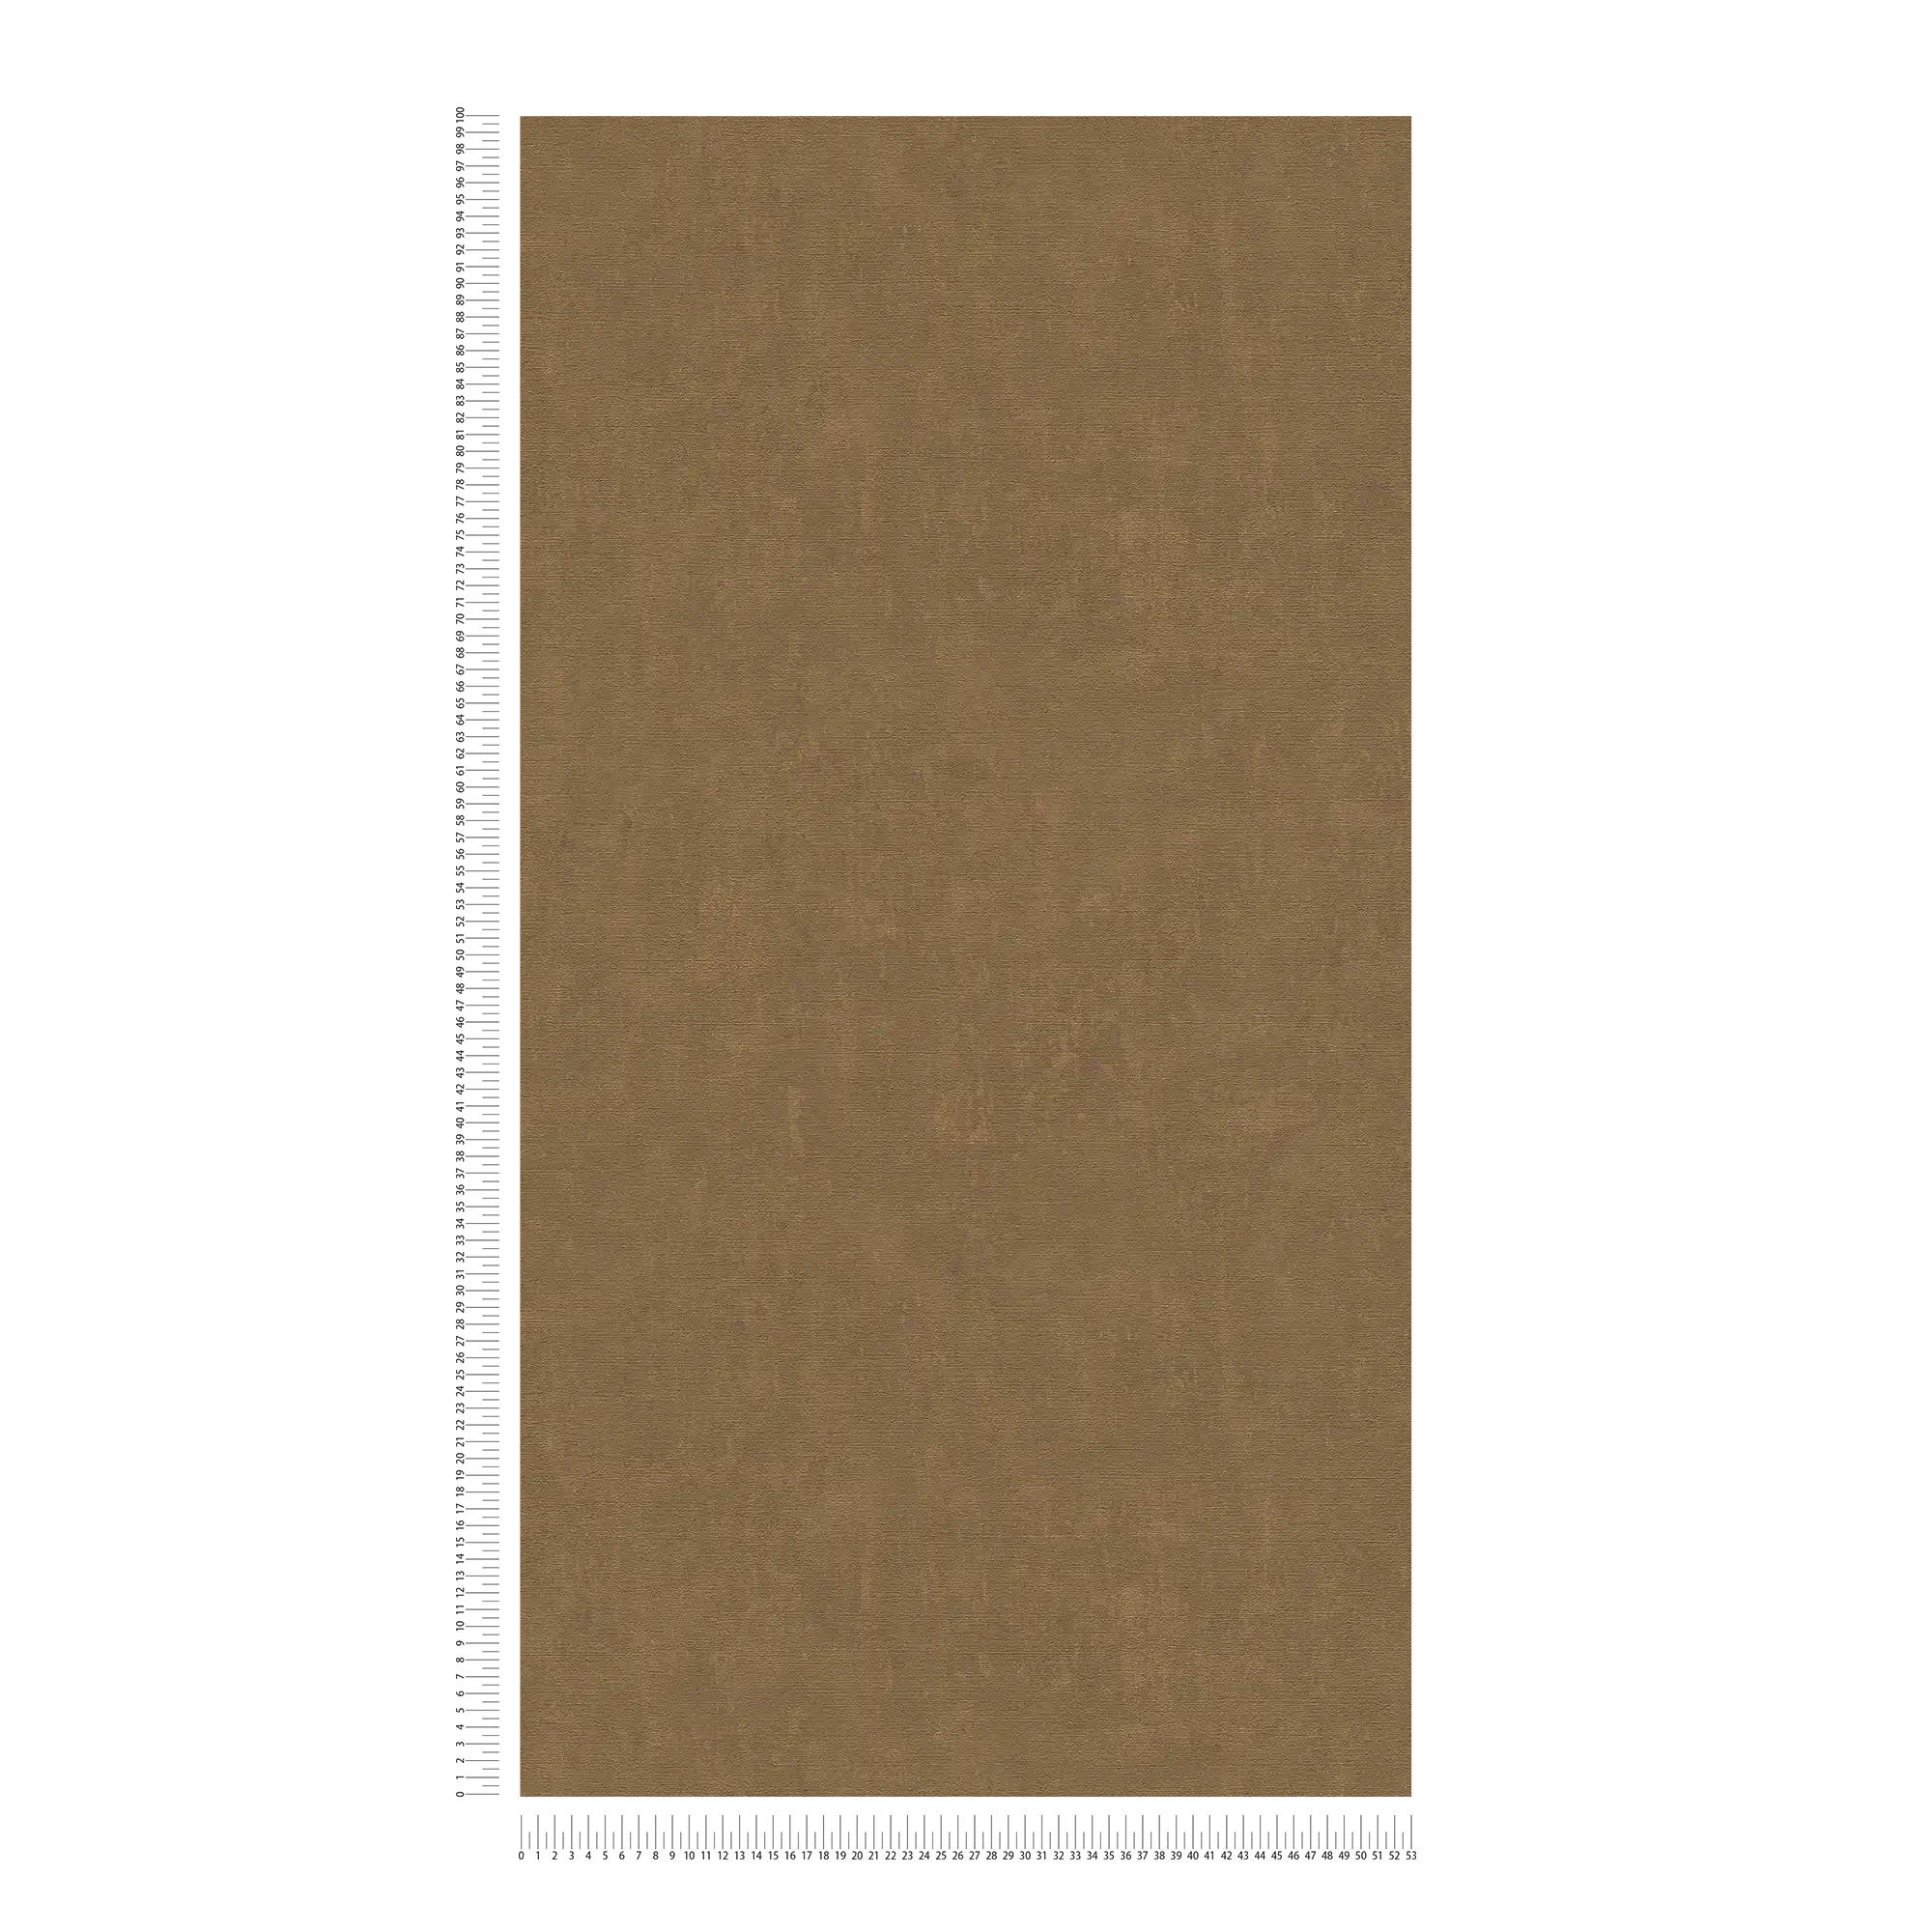             papel pintado bronce moteado con aspecto de yeso en aspecto usado - marrón, metálico
        